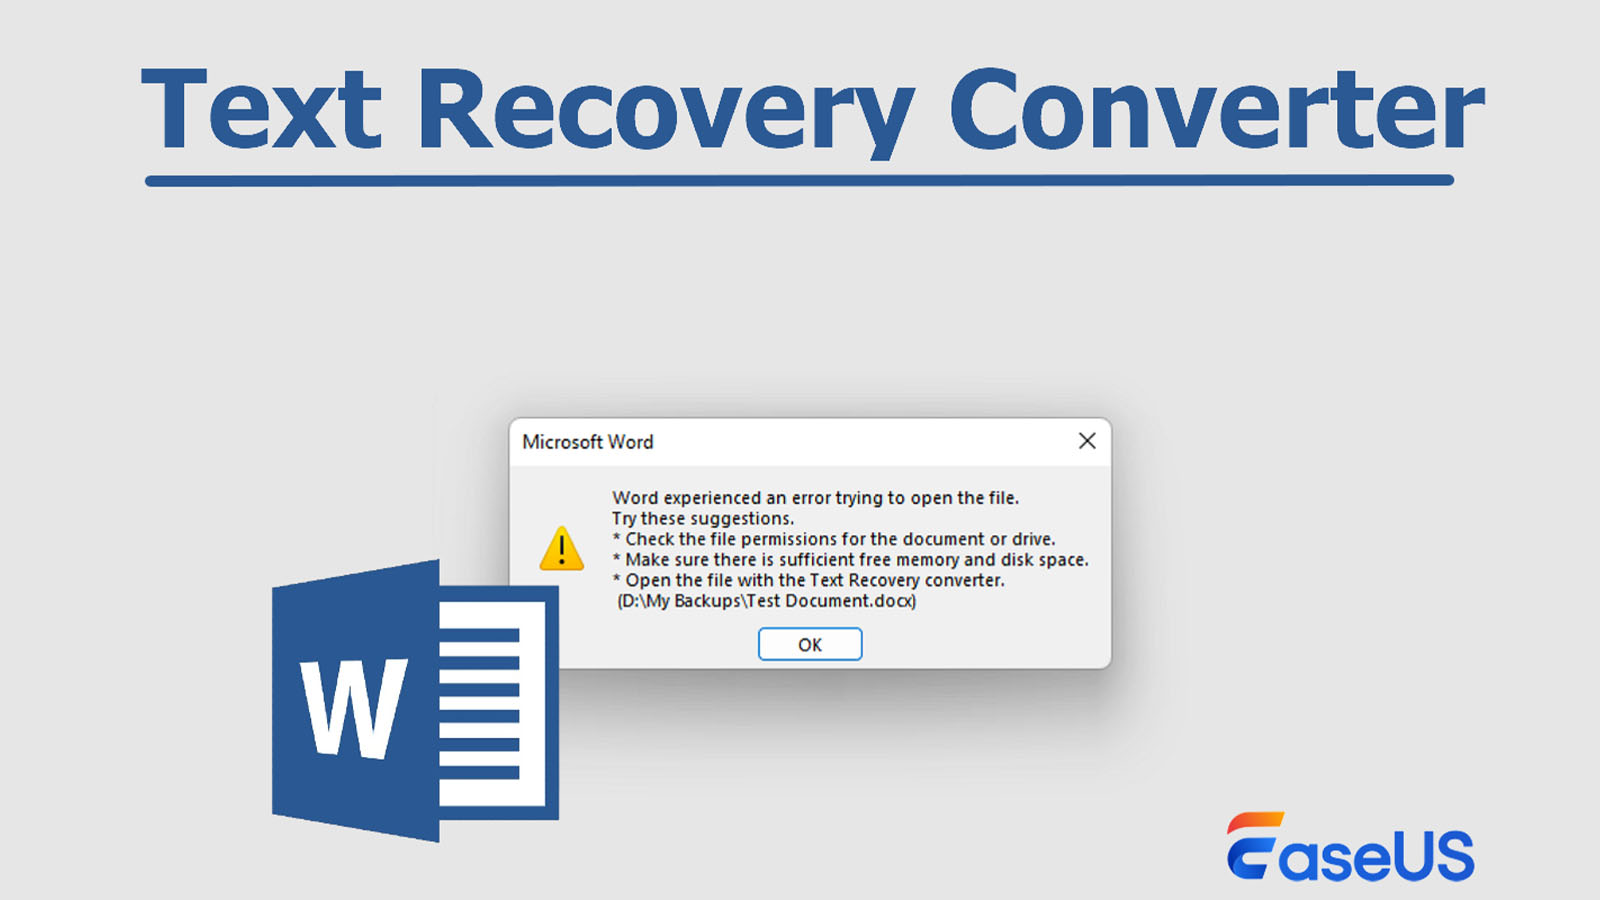 Una imagen que muestra el software de recuperación de texto.